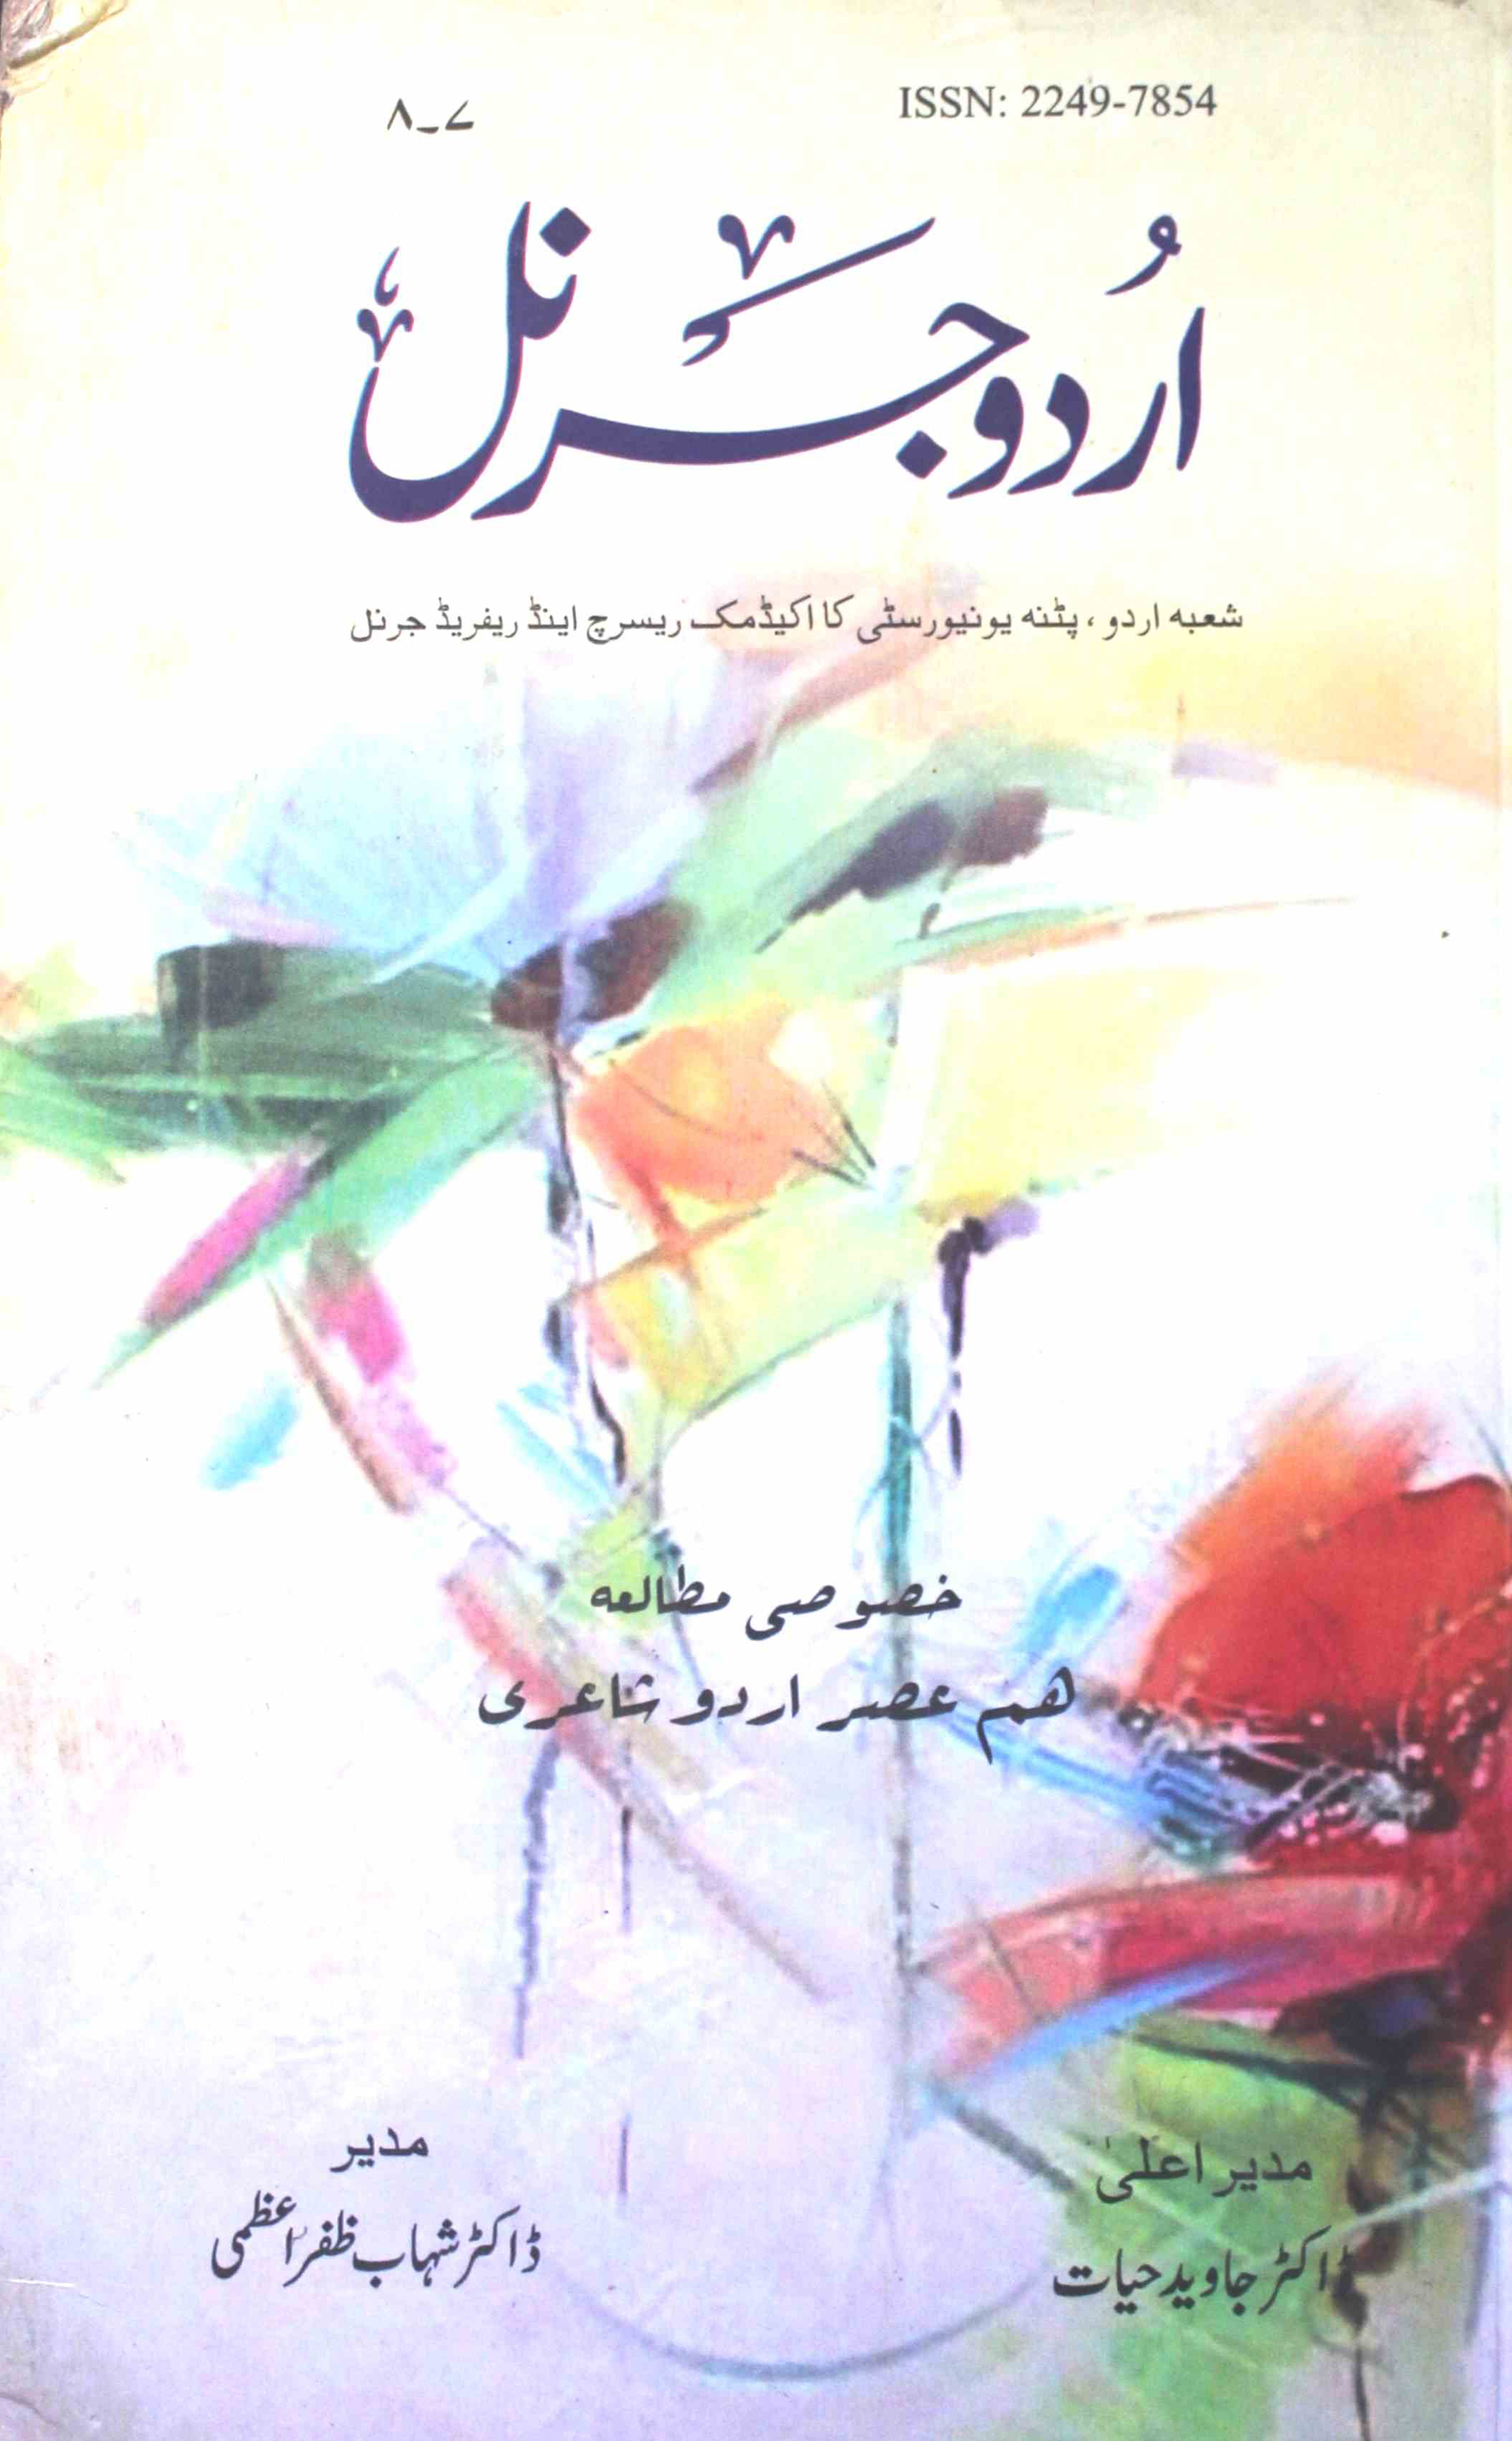 Urdu Journal 7 8-Kitabi Silsila-007,008